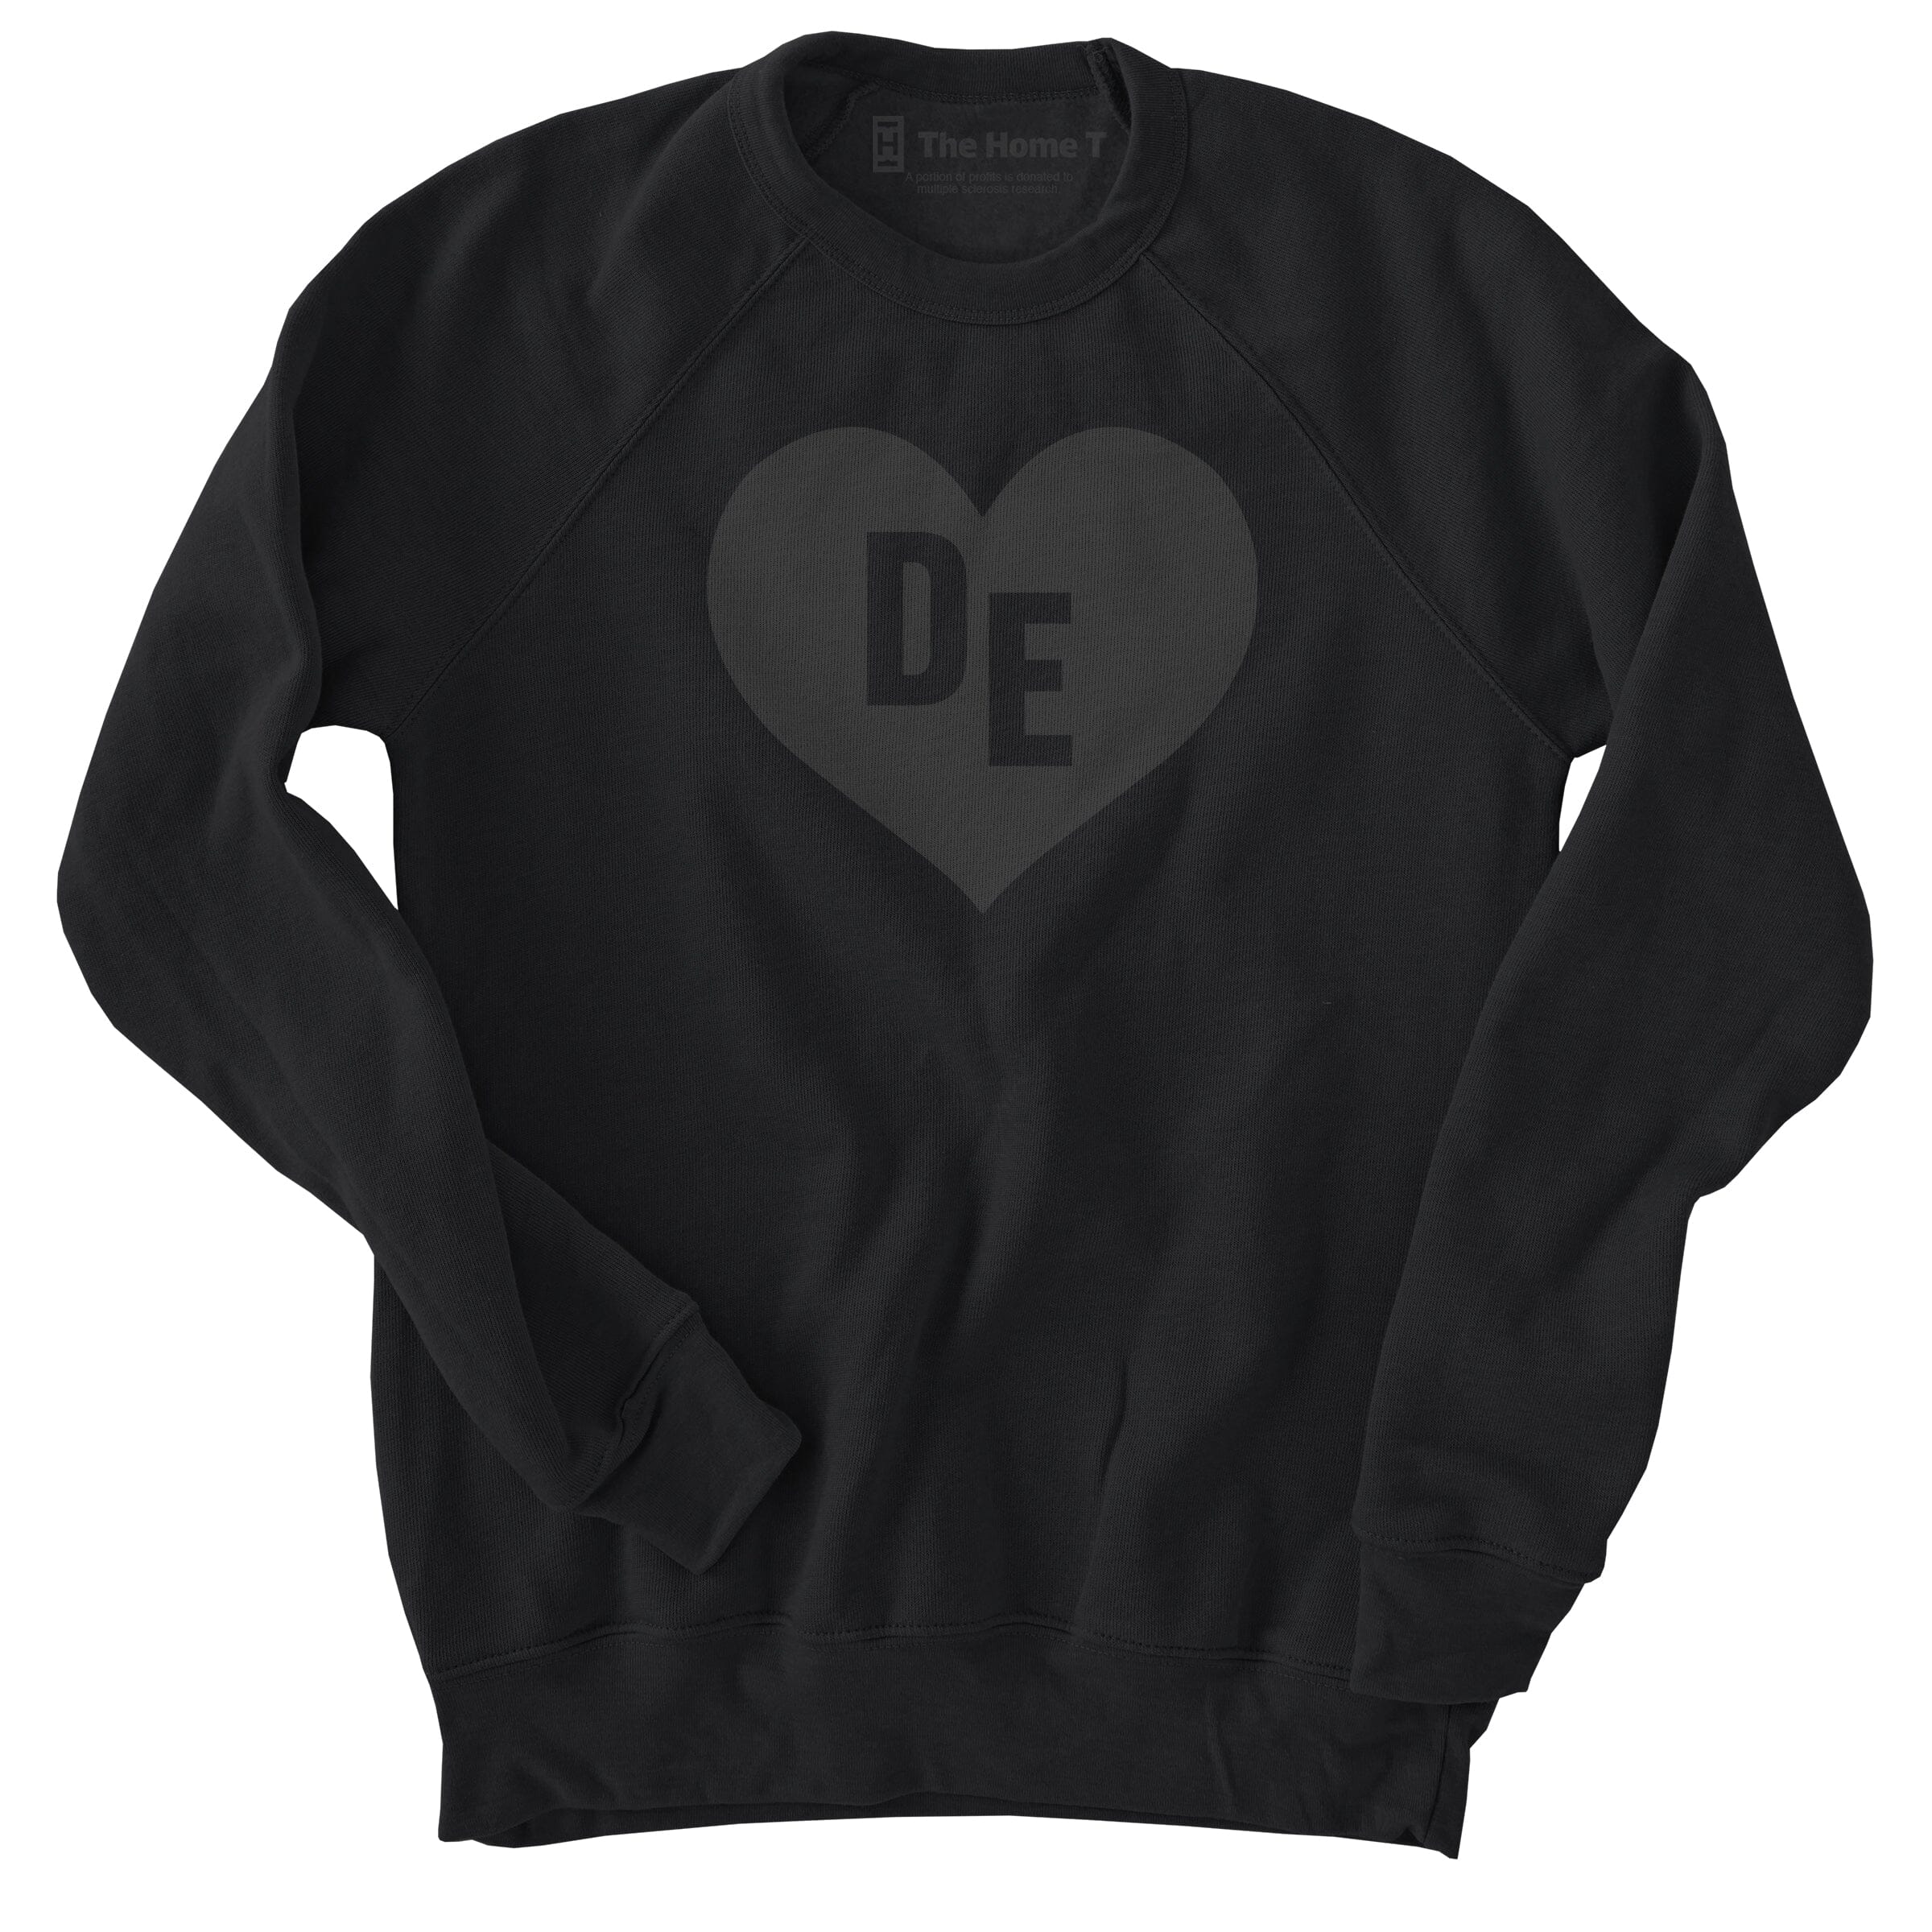 Delaware Black on Black Heart